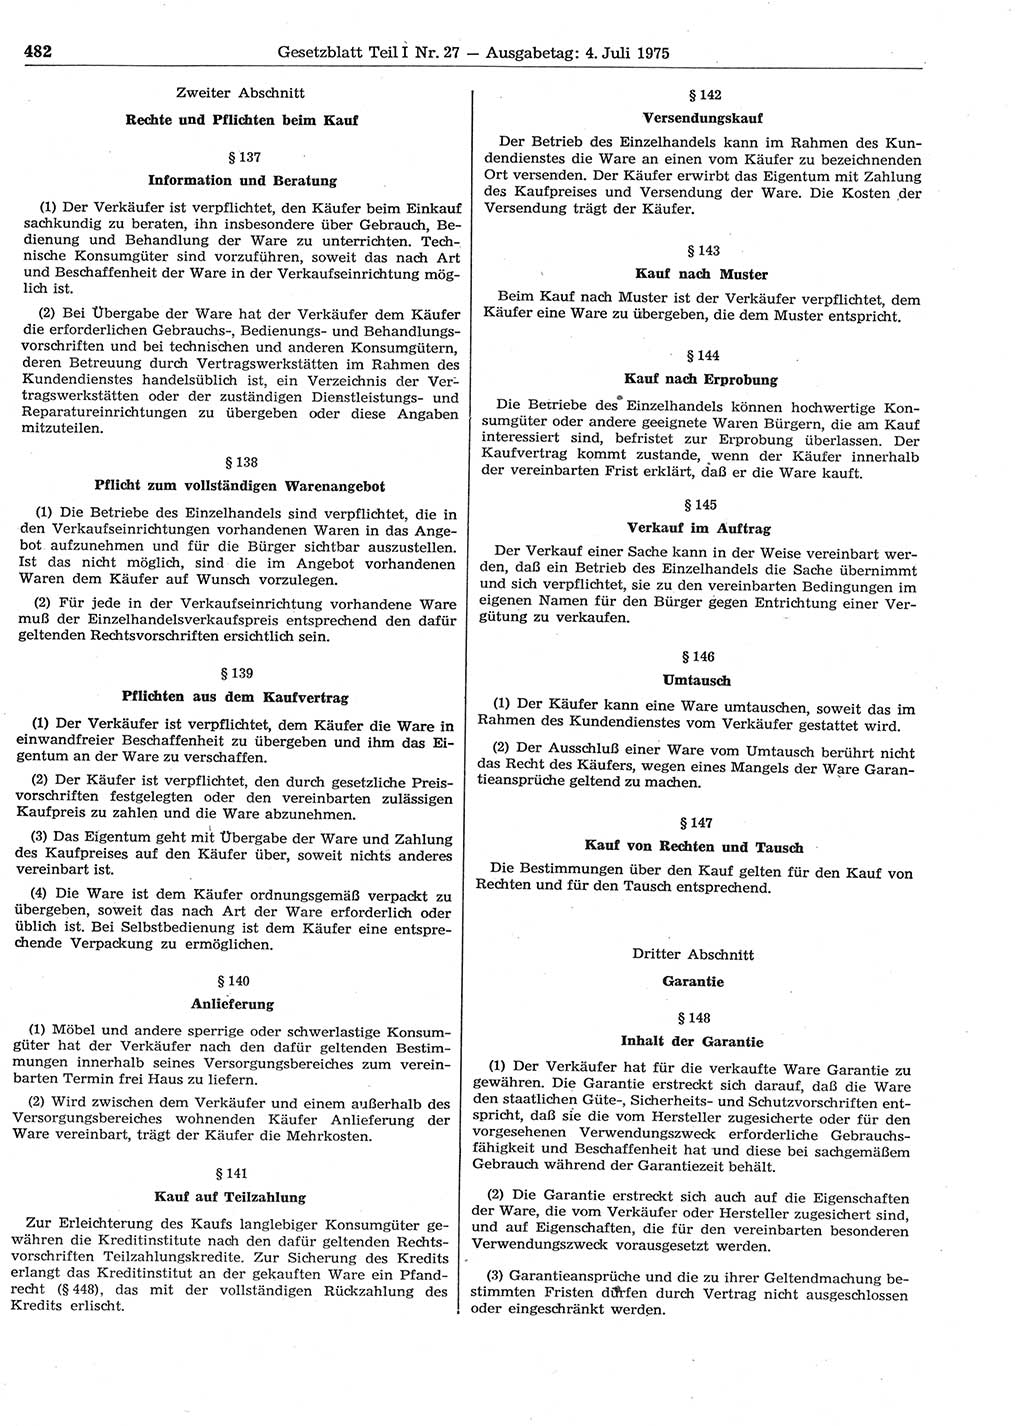 Gesetzblatt (GBl.) der Deutschen Demokratischen Republik (DDR) Teil Ⅰ 1975, Seite 482 (GBl. DDR Ⅰ 1975, S. 482)